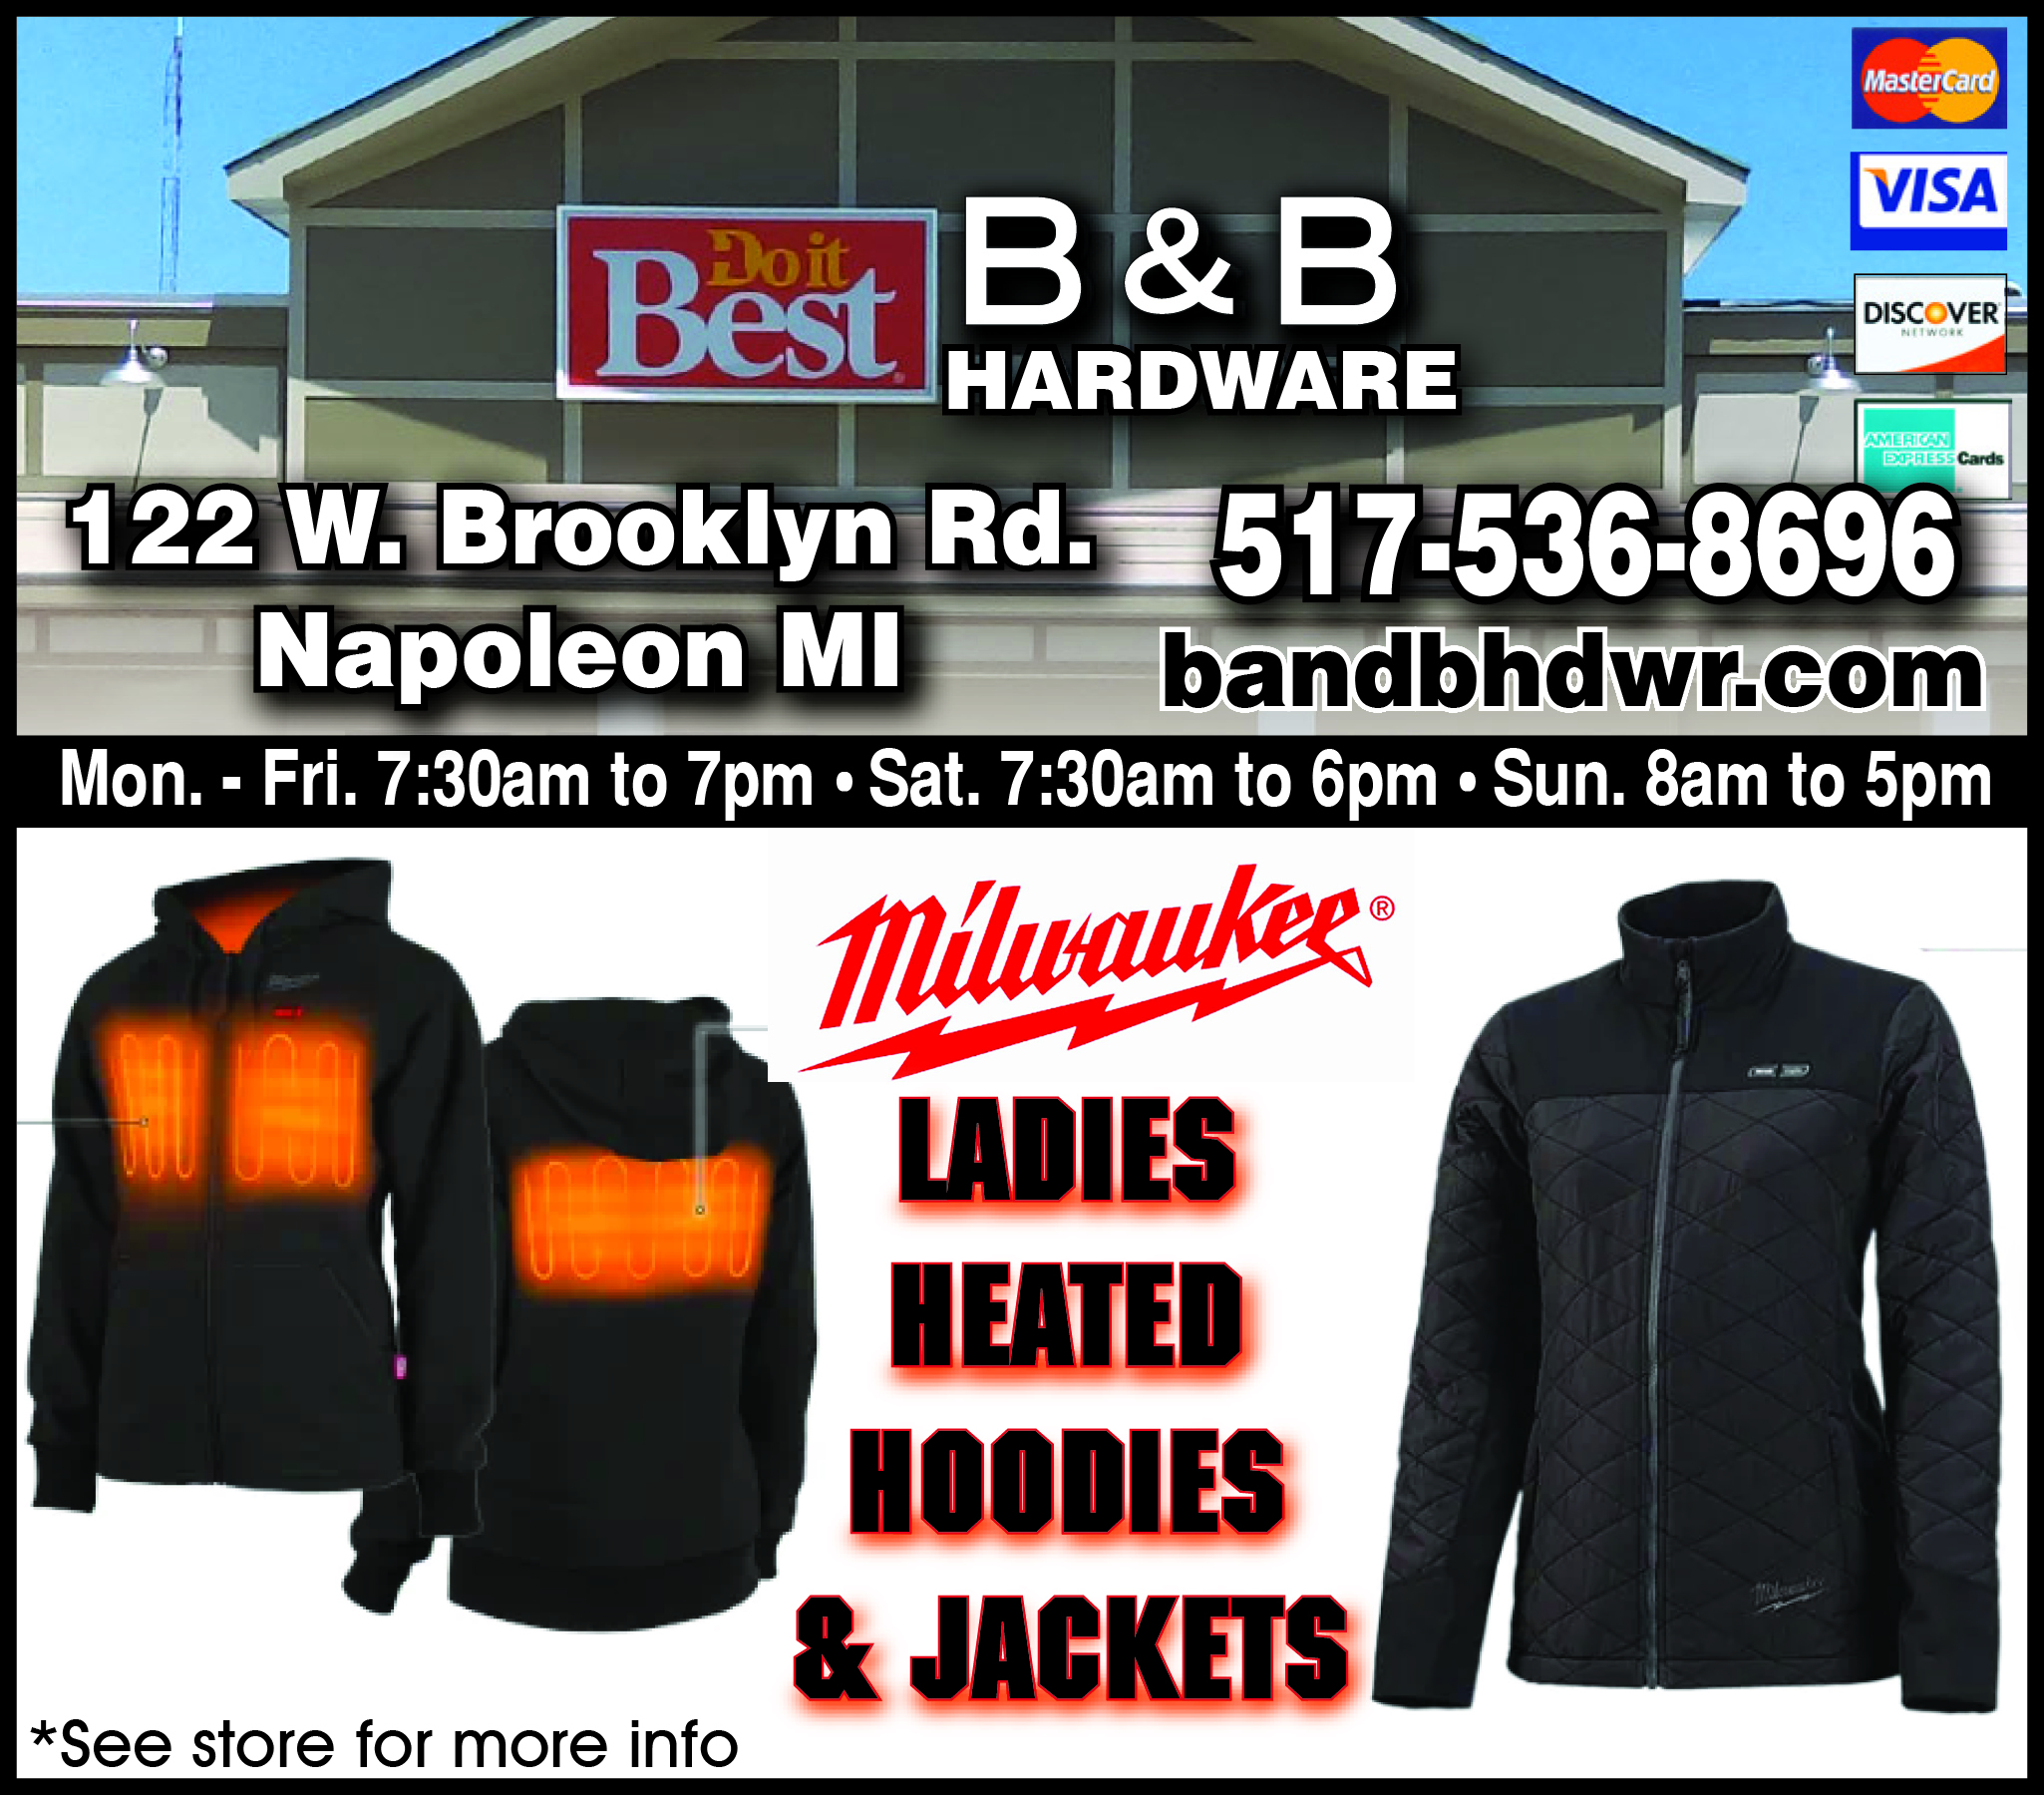 B&B Hardware Ladies Heated Hoodies & Jackets On Sale